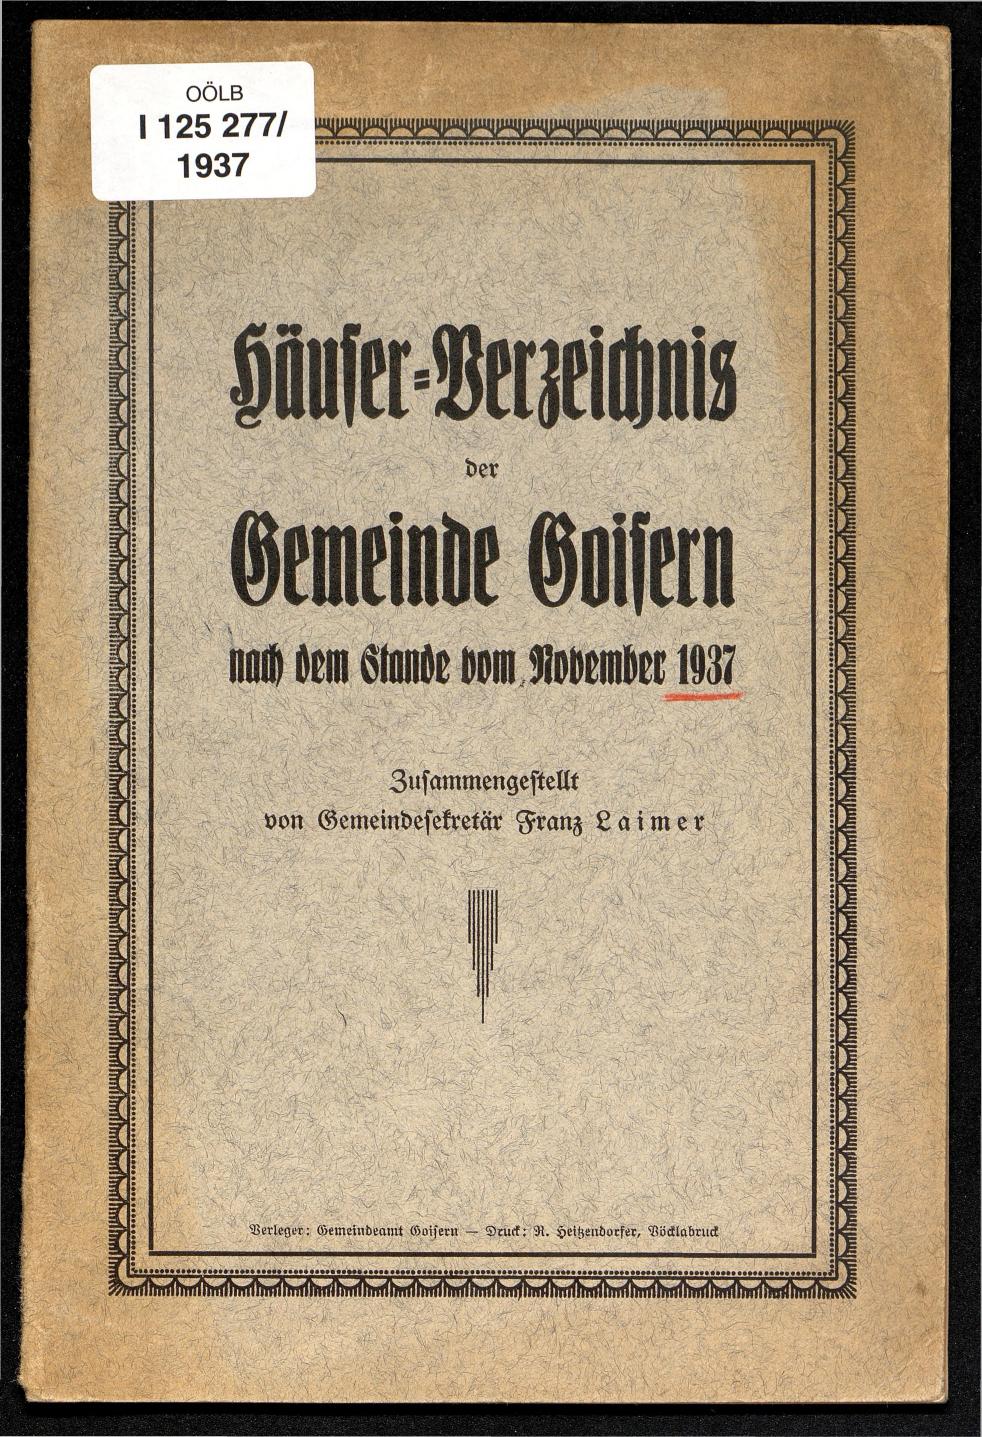 Häuser-Verzeichnis der Gemeinde Goisern nach dem Stande von November 1937 - Seite 1